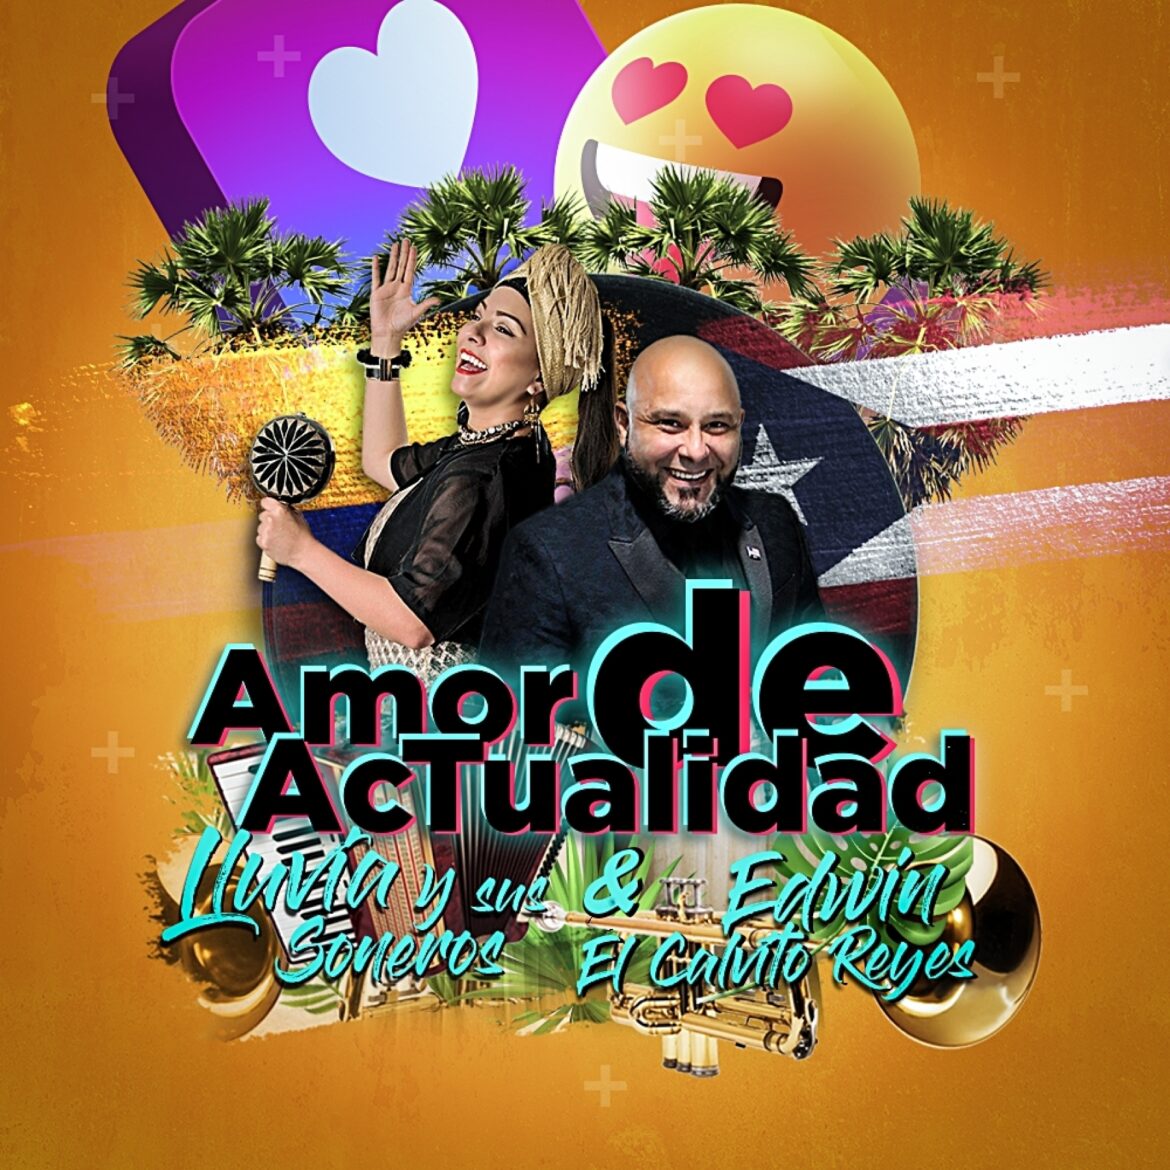 Edwin “El Calvito” Reyes & Lluvia y Sus Soneros presentan: “Amor de Actualidad”